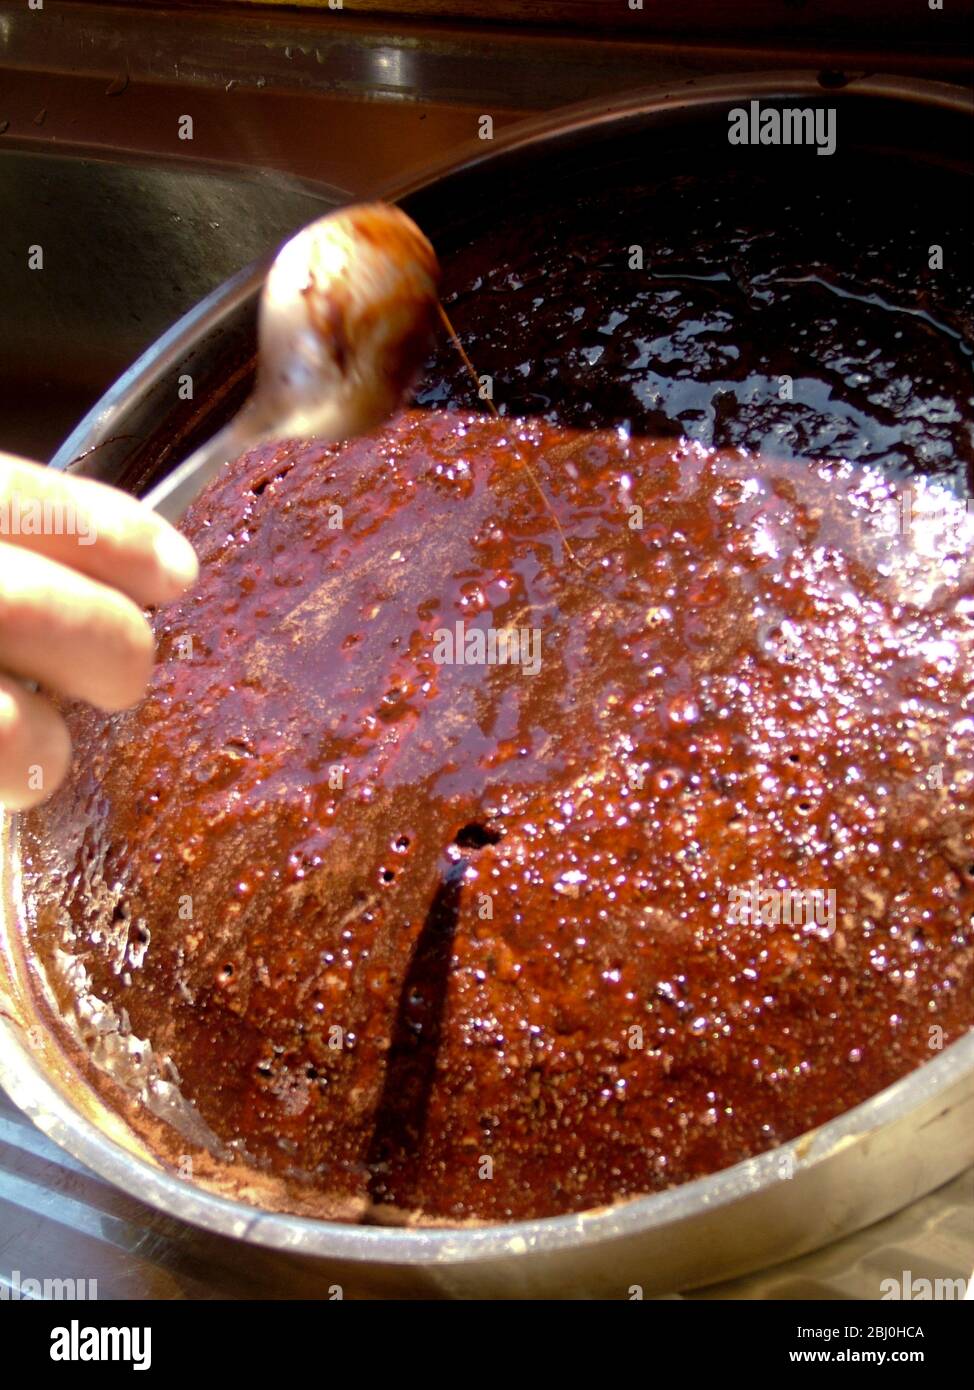 Riche gâteau au chocolat collant cuit à bord du goulet turc, dosé de sirop de chocolat pour plus de facilité. - Banque D'Images